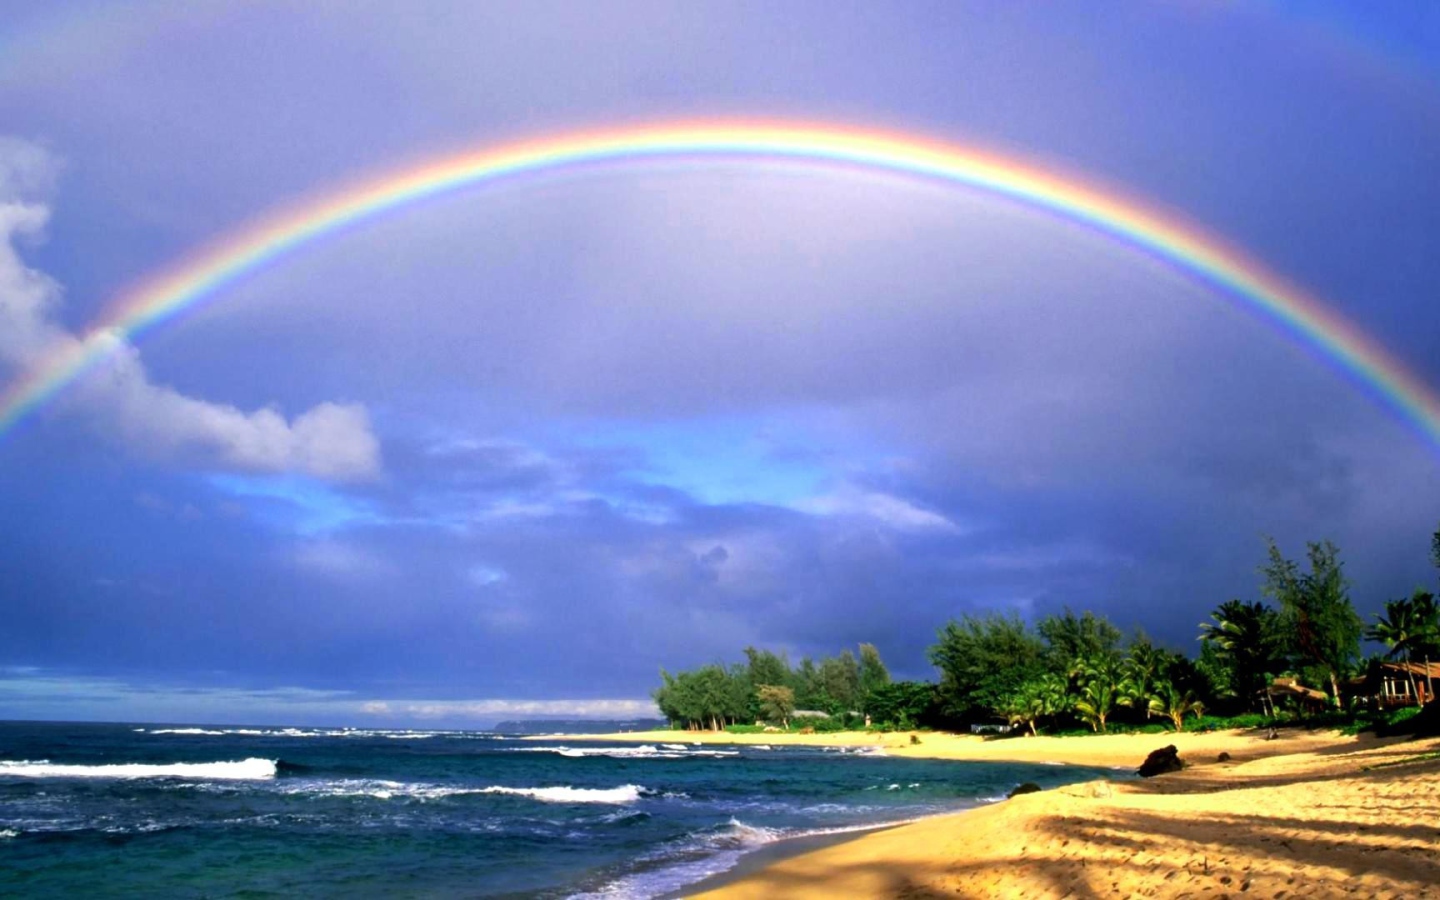 Rainbow over the sea and the beach